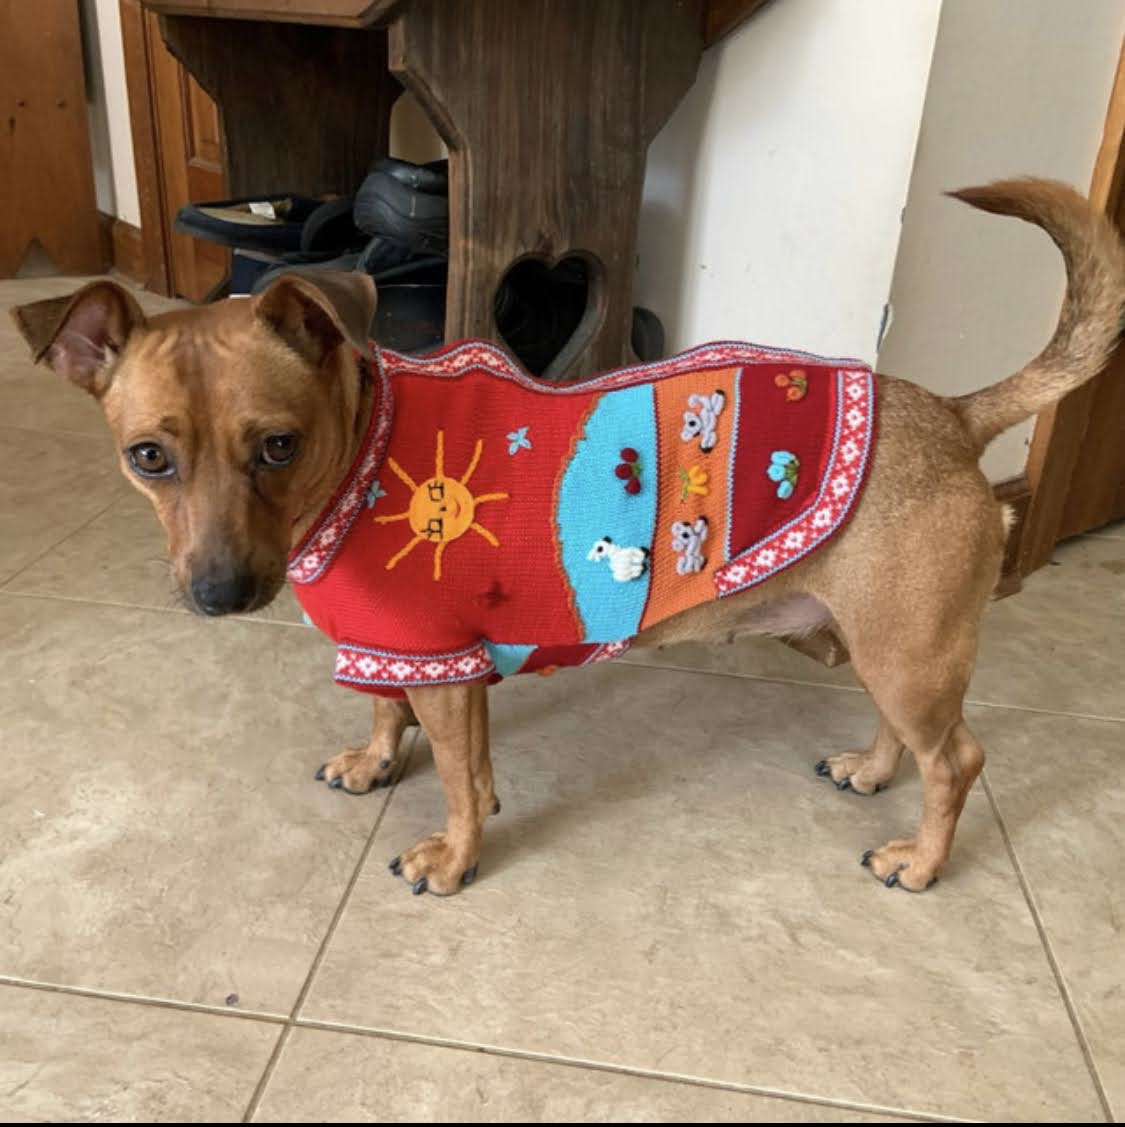 Size 10 Peruvian Dog Sweater